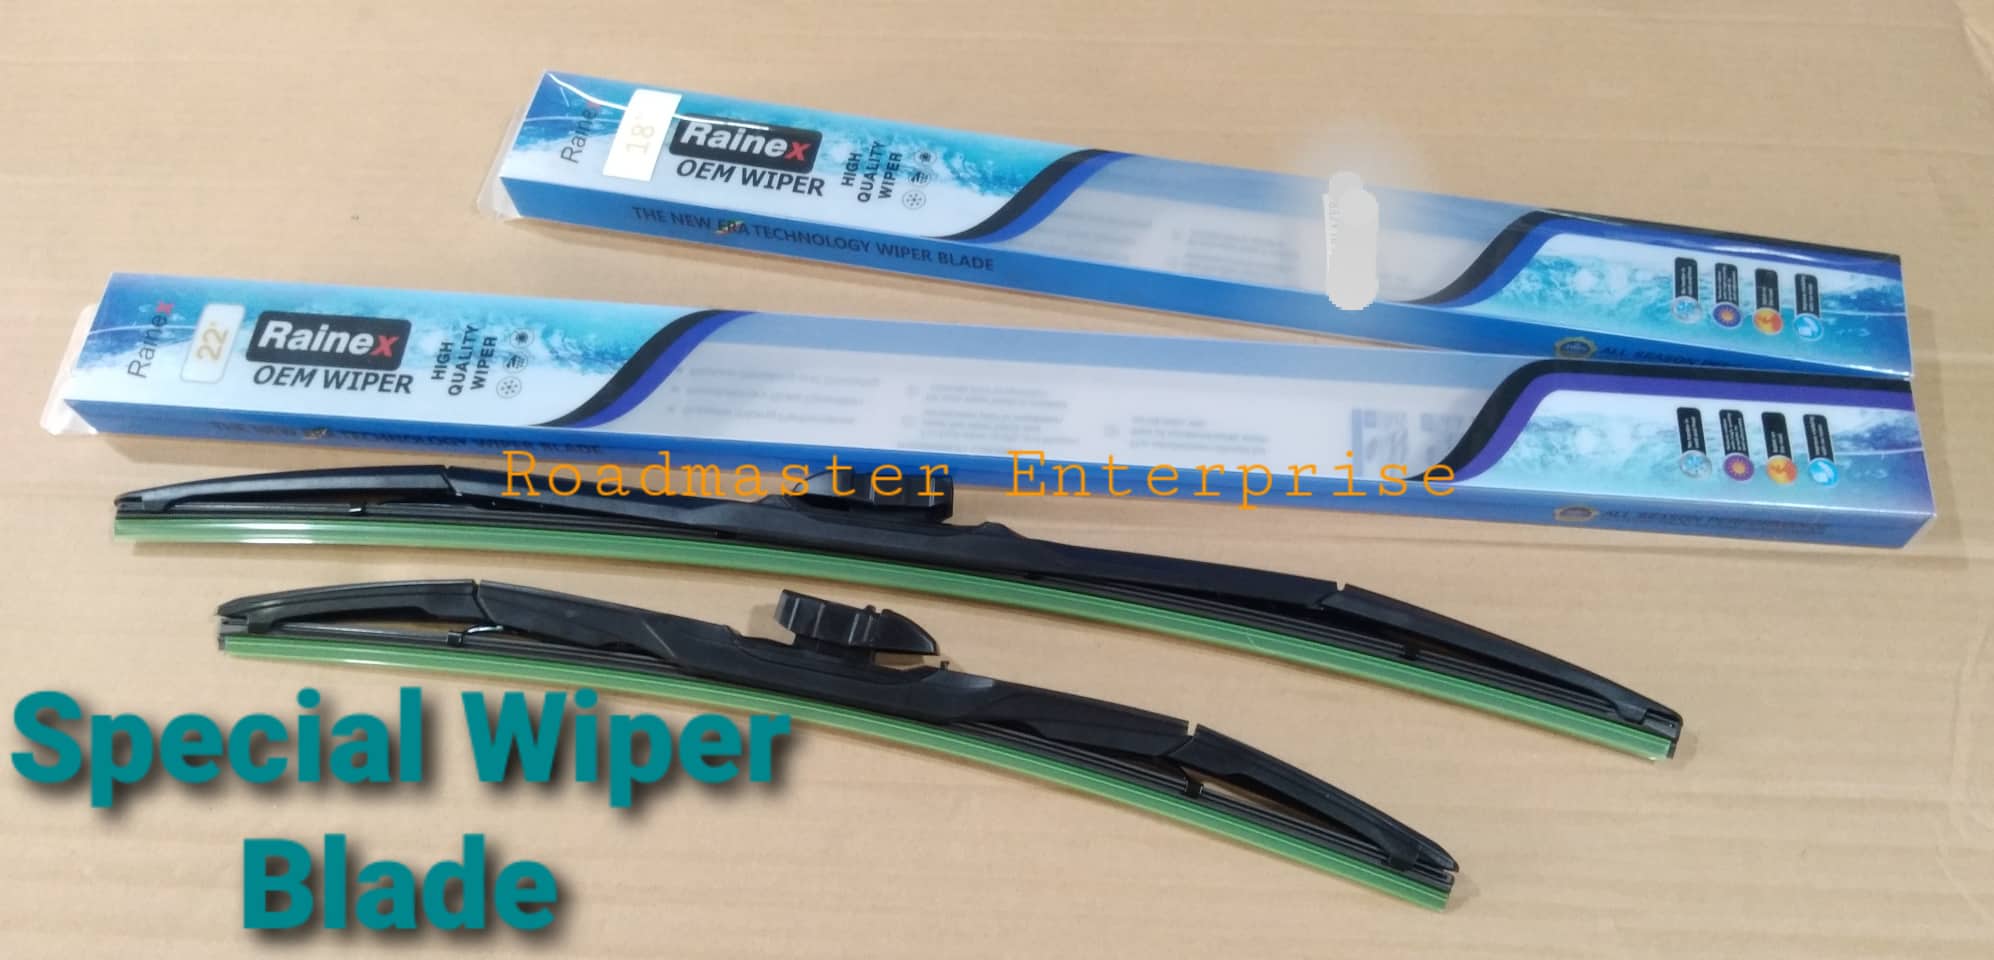 2 pcs Rainex Brand OEM Wiper All Season Performance Special Wiper Blade